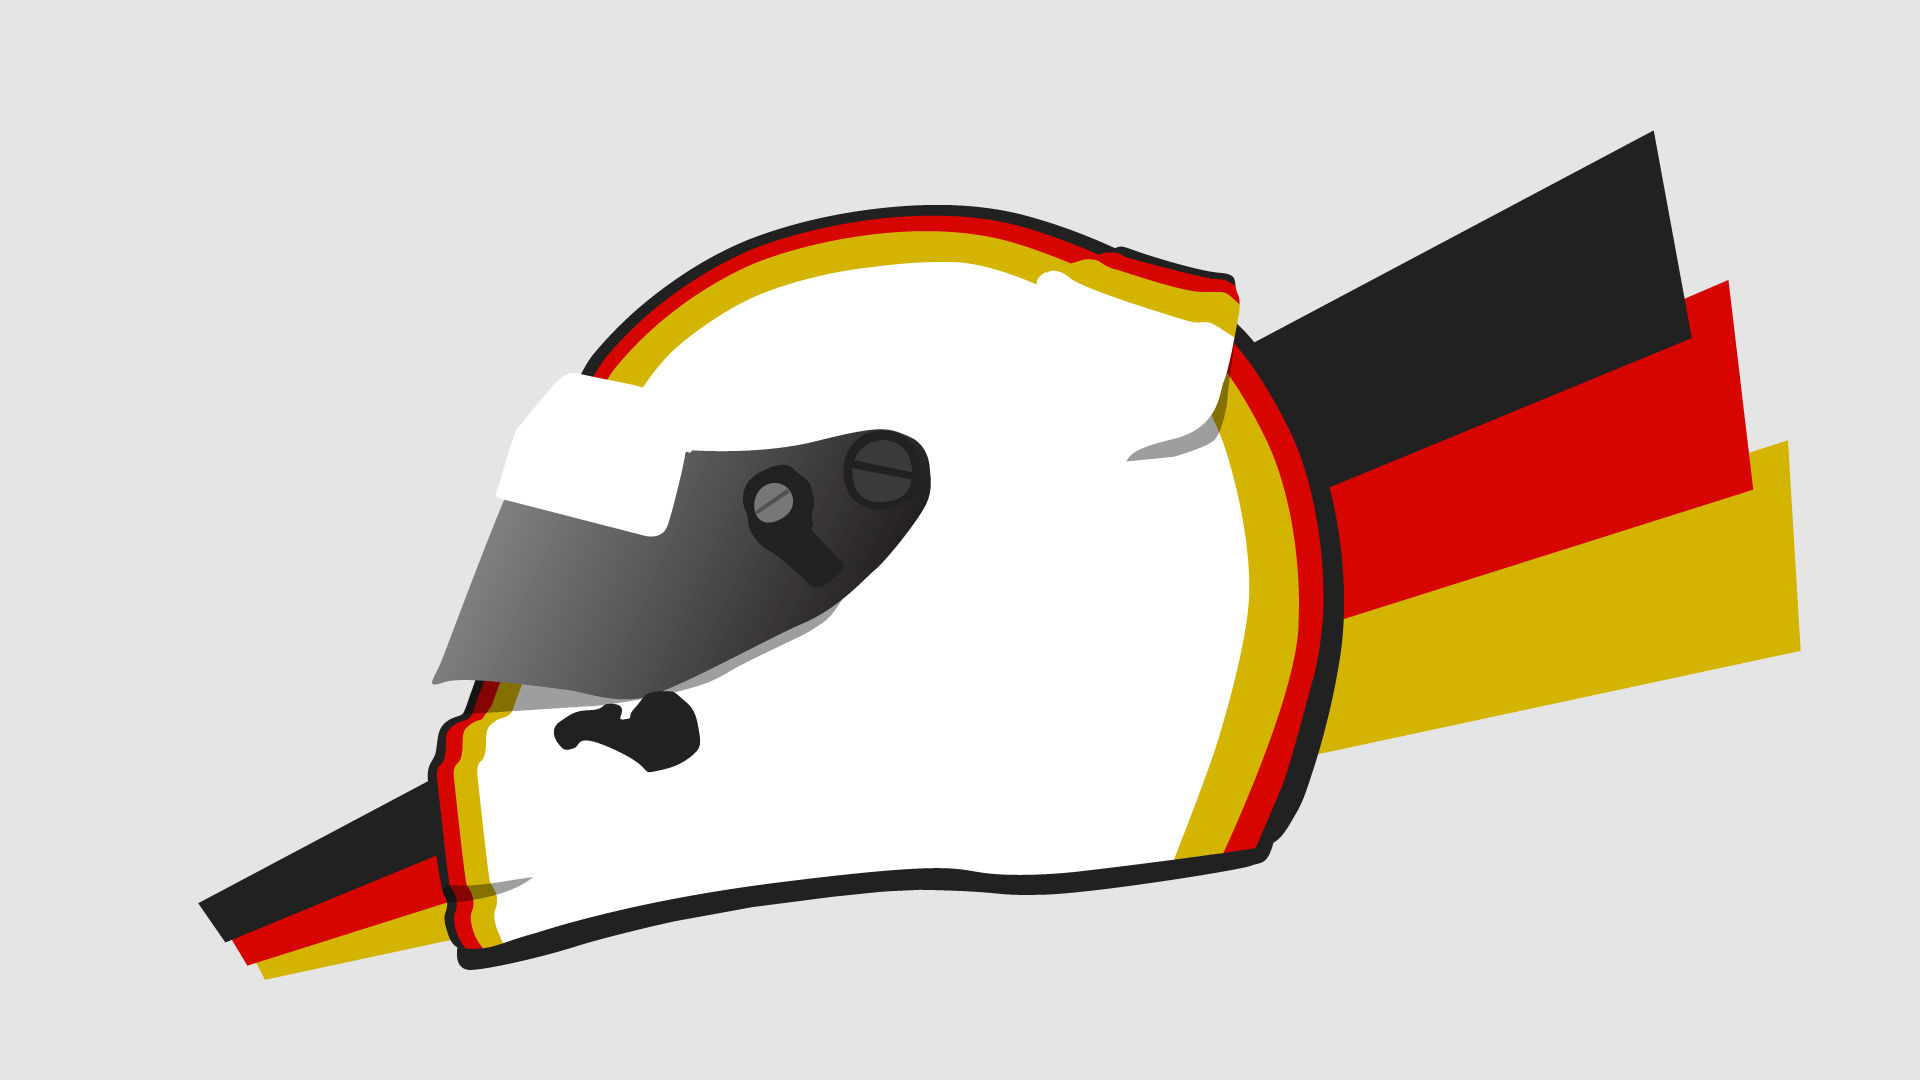 Design: Sebastian Vettel's 2015 Ferrari helmet